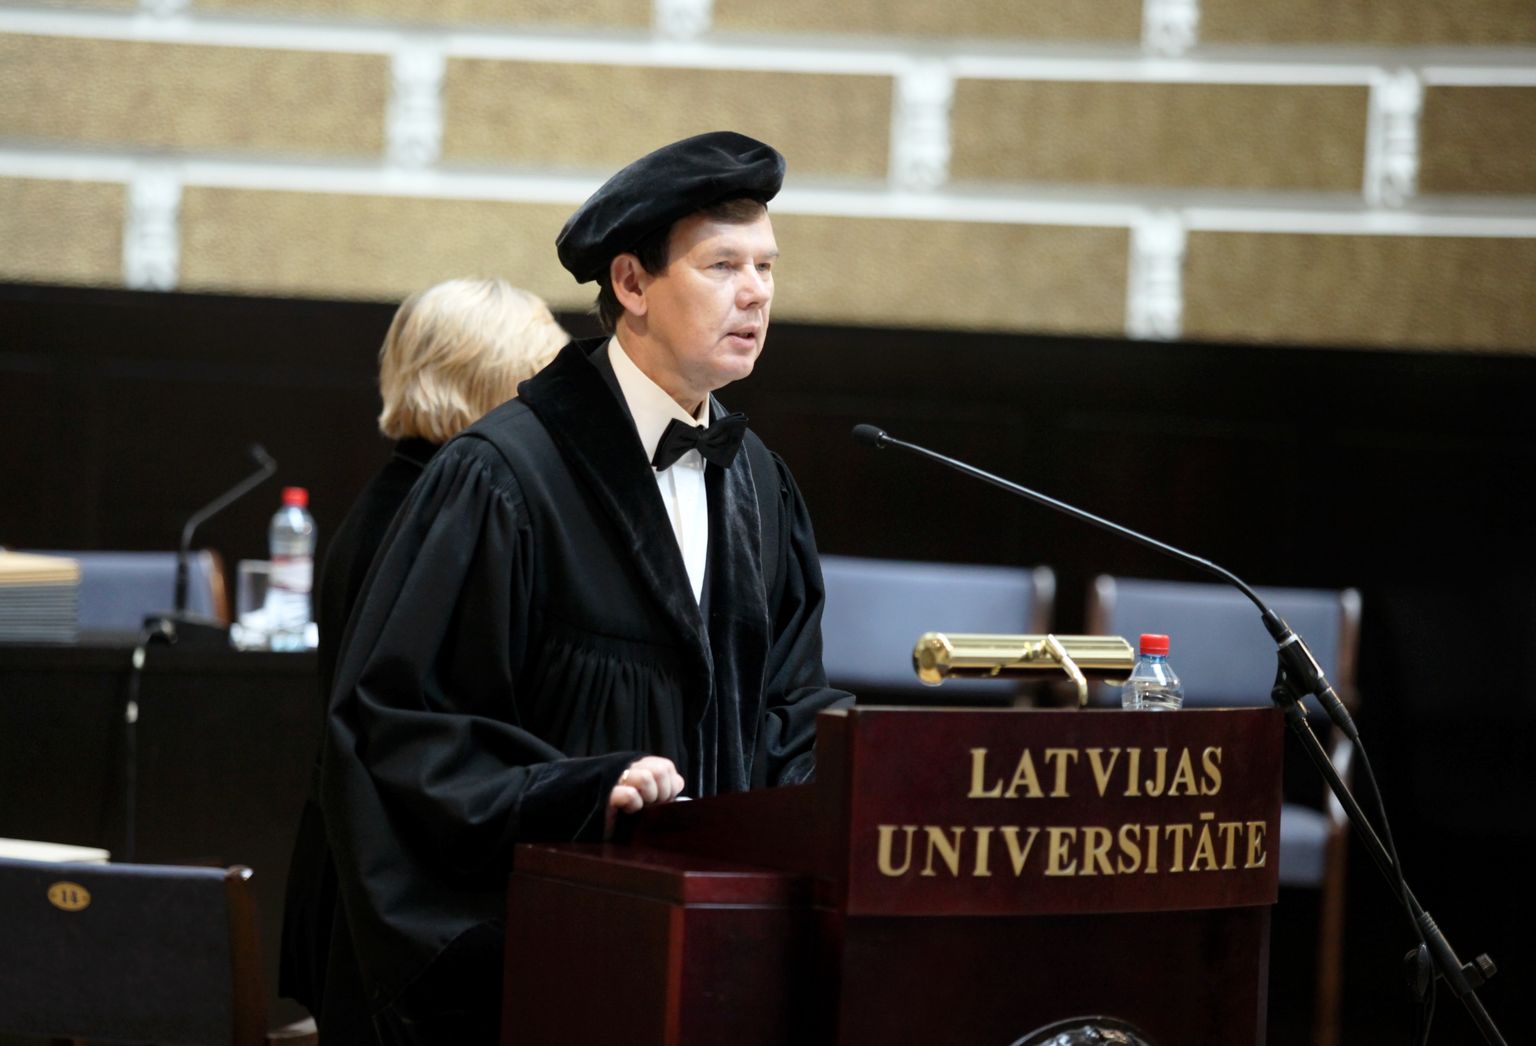 Latvijas Universitātes (LU) senāta priekšsēdētājs Māris Kļaviņš piedalās svinīgajā universitātes Senāta sēdē, kuras laikā tiek sveikti LU Goda doktori, Goda biedri, kā arī emeritus profesori un jaunie doktori.